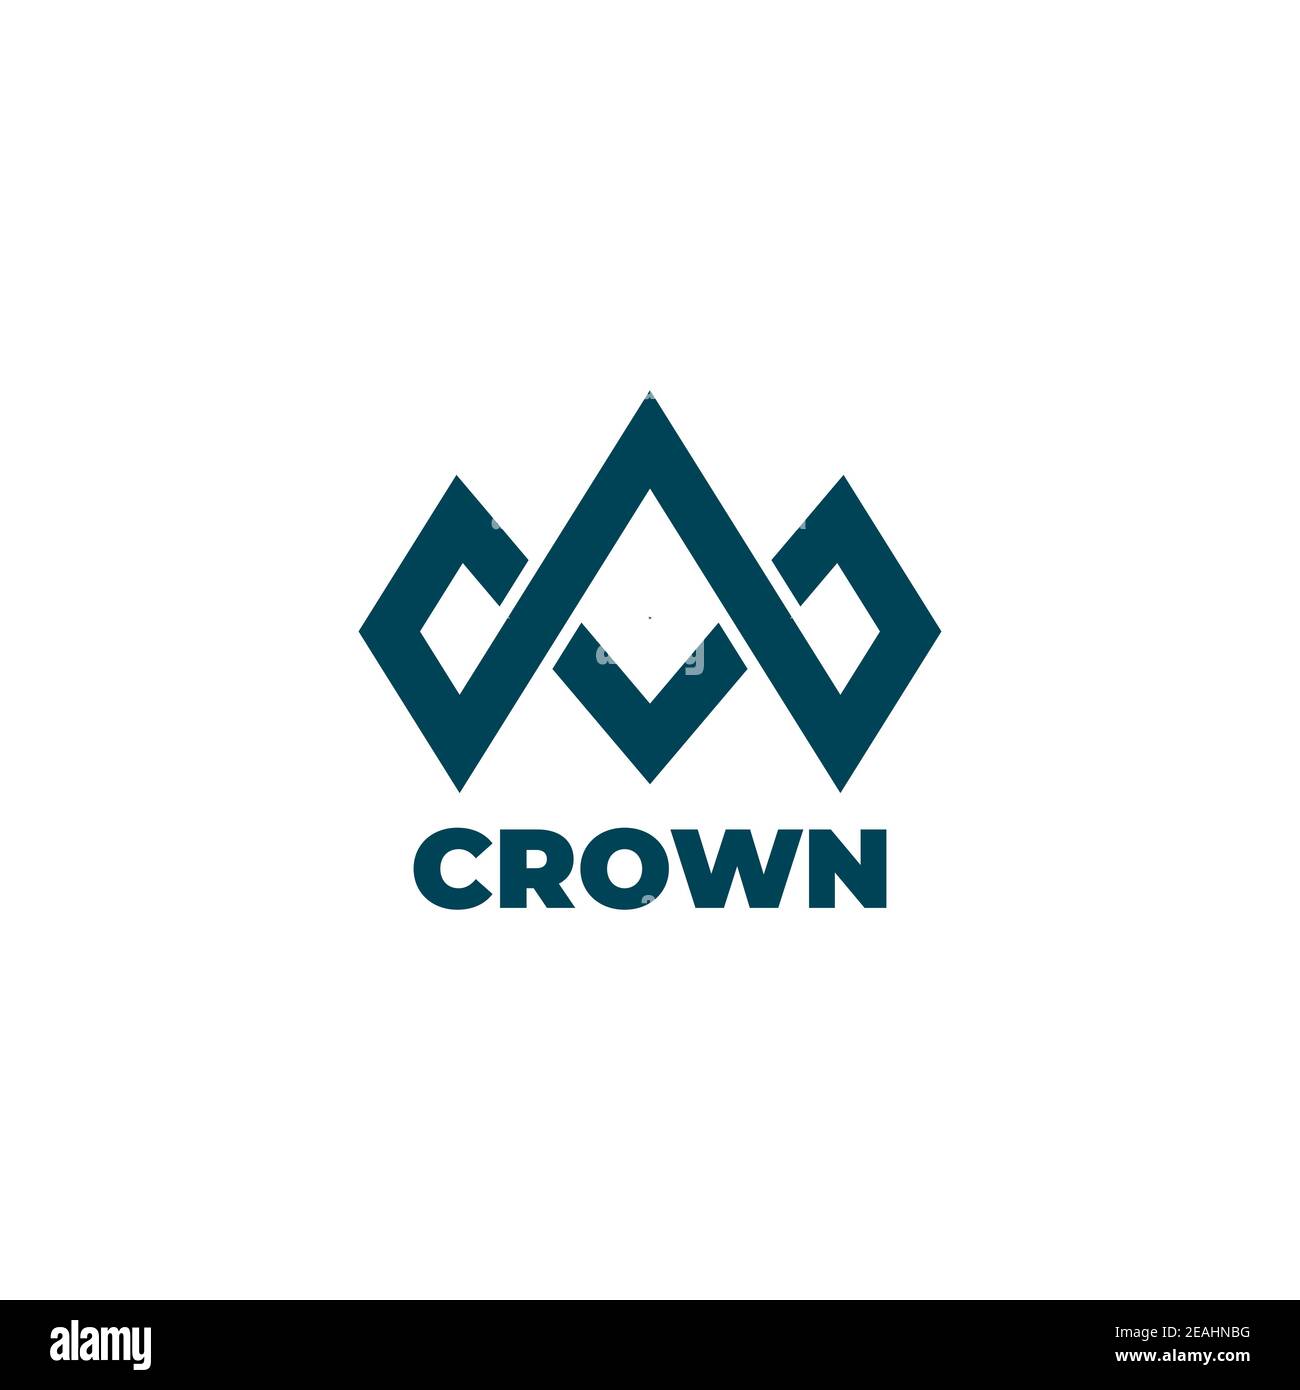 Crown logo design symbol vector template Stock Vector